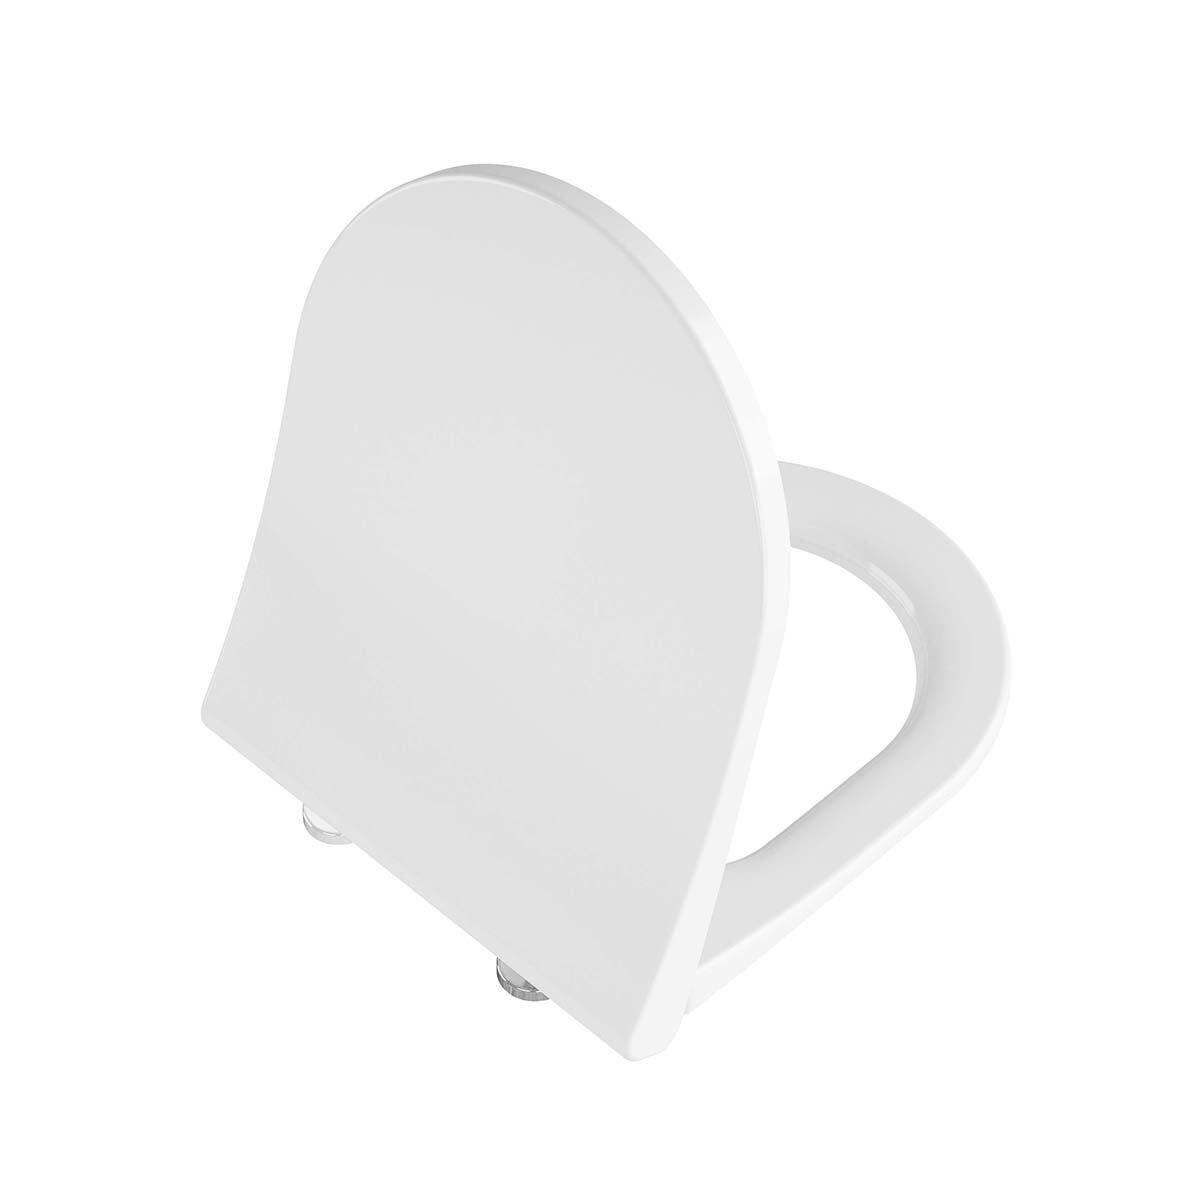 131-003R009-Vitra Integra Slim Etekli Soft Klozet Kapağı - Duroplast Beyaz